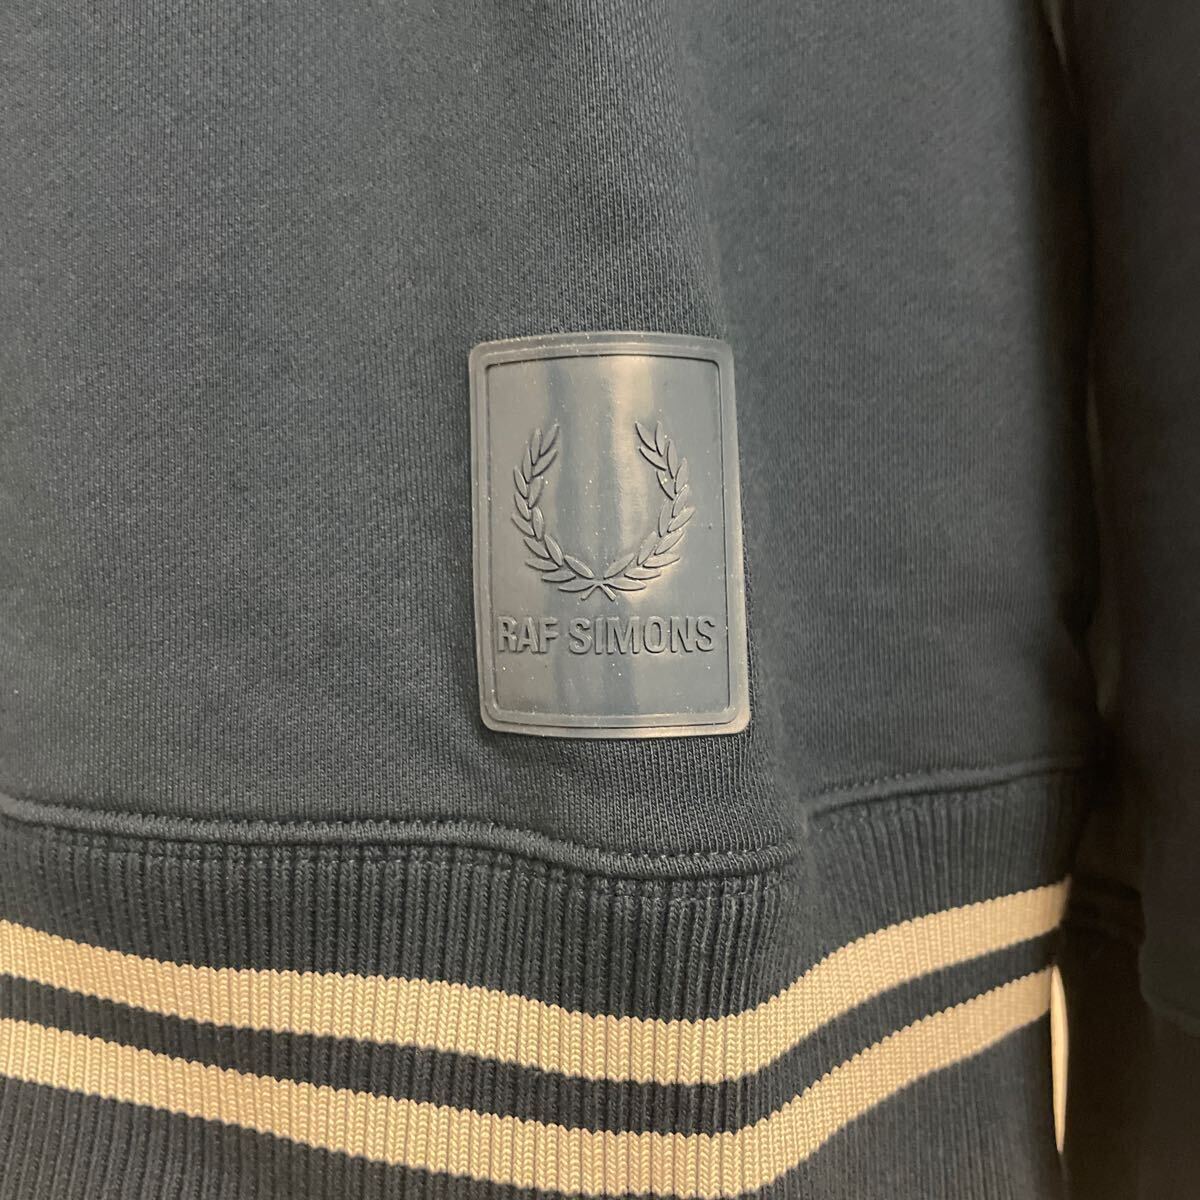  Raf Simons Fred Perry RAF SIMONS FRED PERRY Logo вышивка длинный рукав спортивная фуфайка футболка голубой темно-синий бледно-голубой bai цвет 